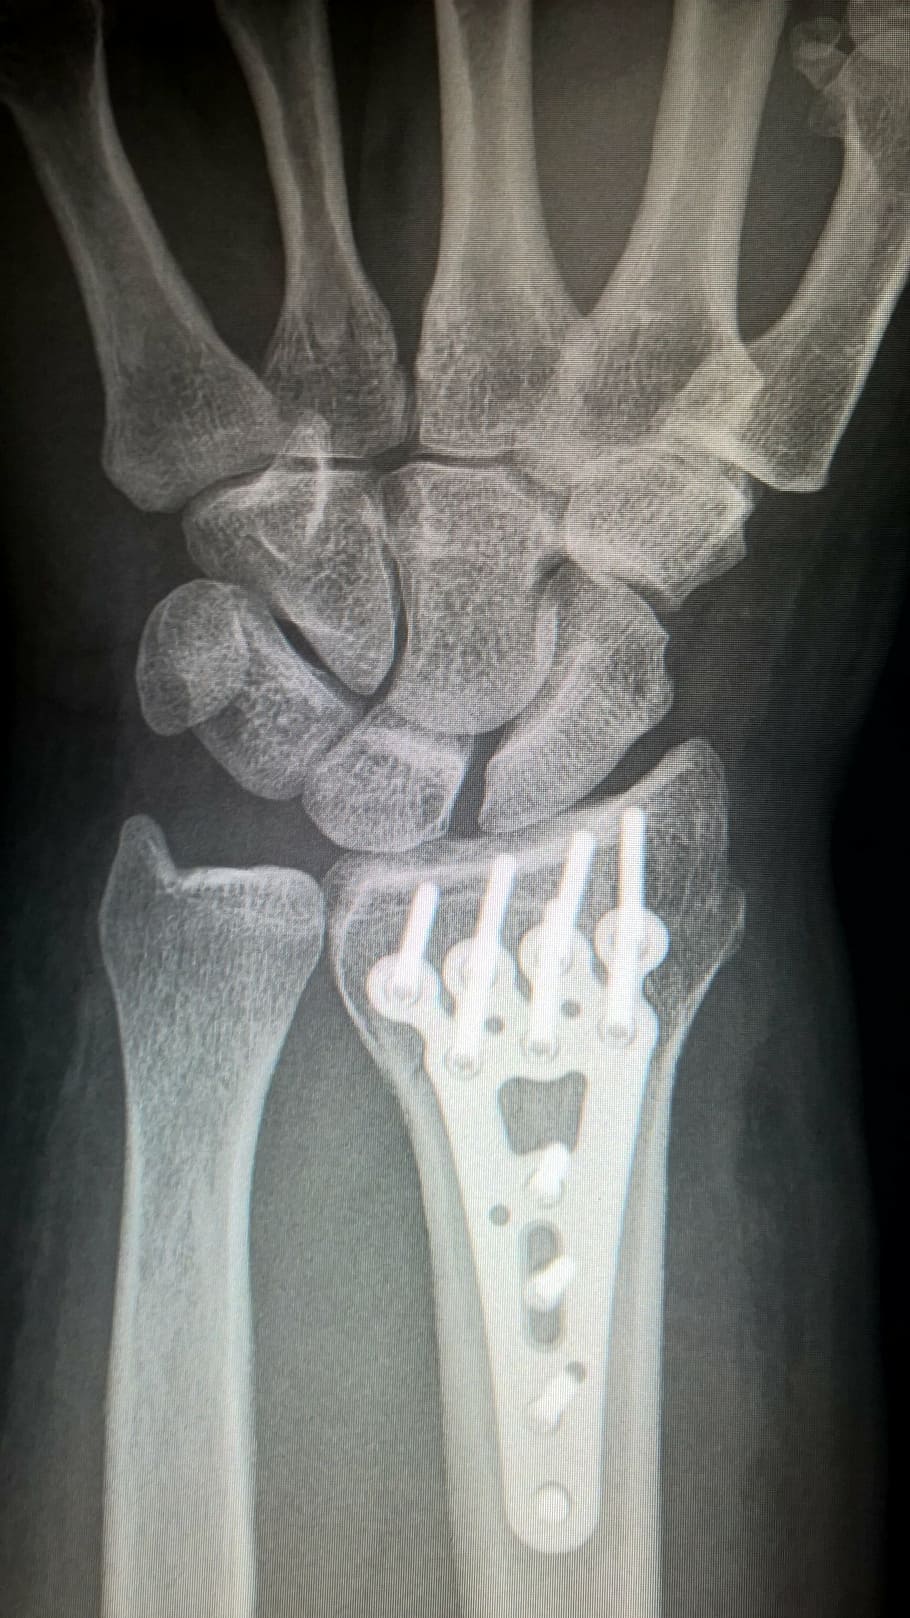 raio-x do braço, braço quebrado, fixação de placa, placa de titânio, fratura de raio, punho, cirurgia, cirurgia de trauma, imagem de raio-x, osso